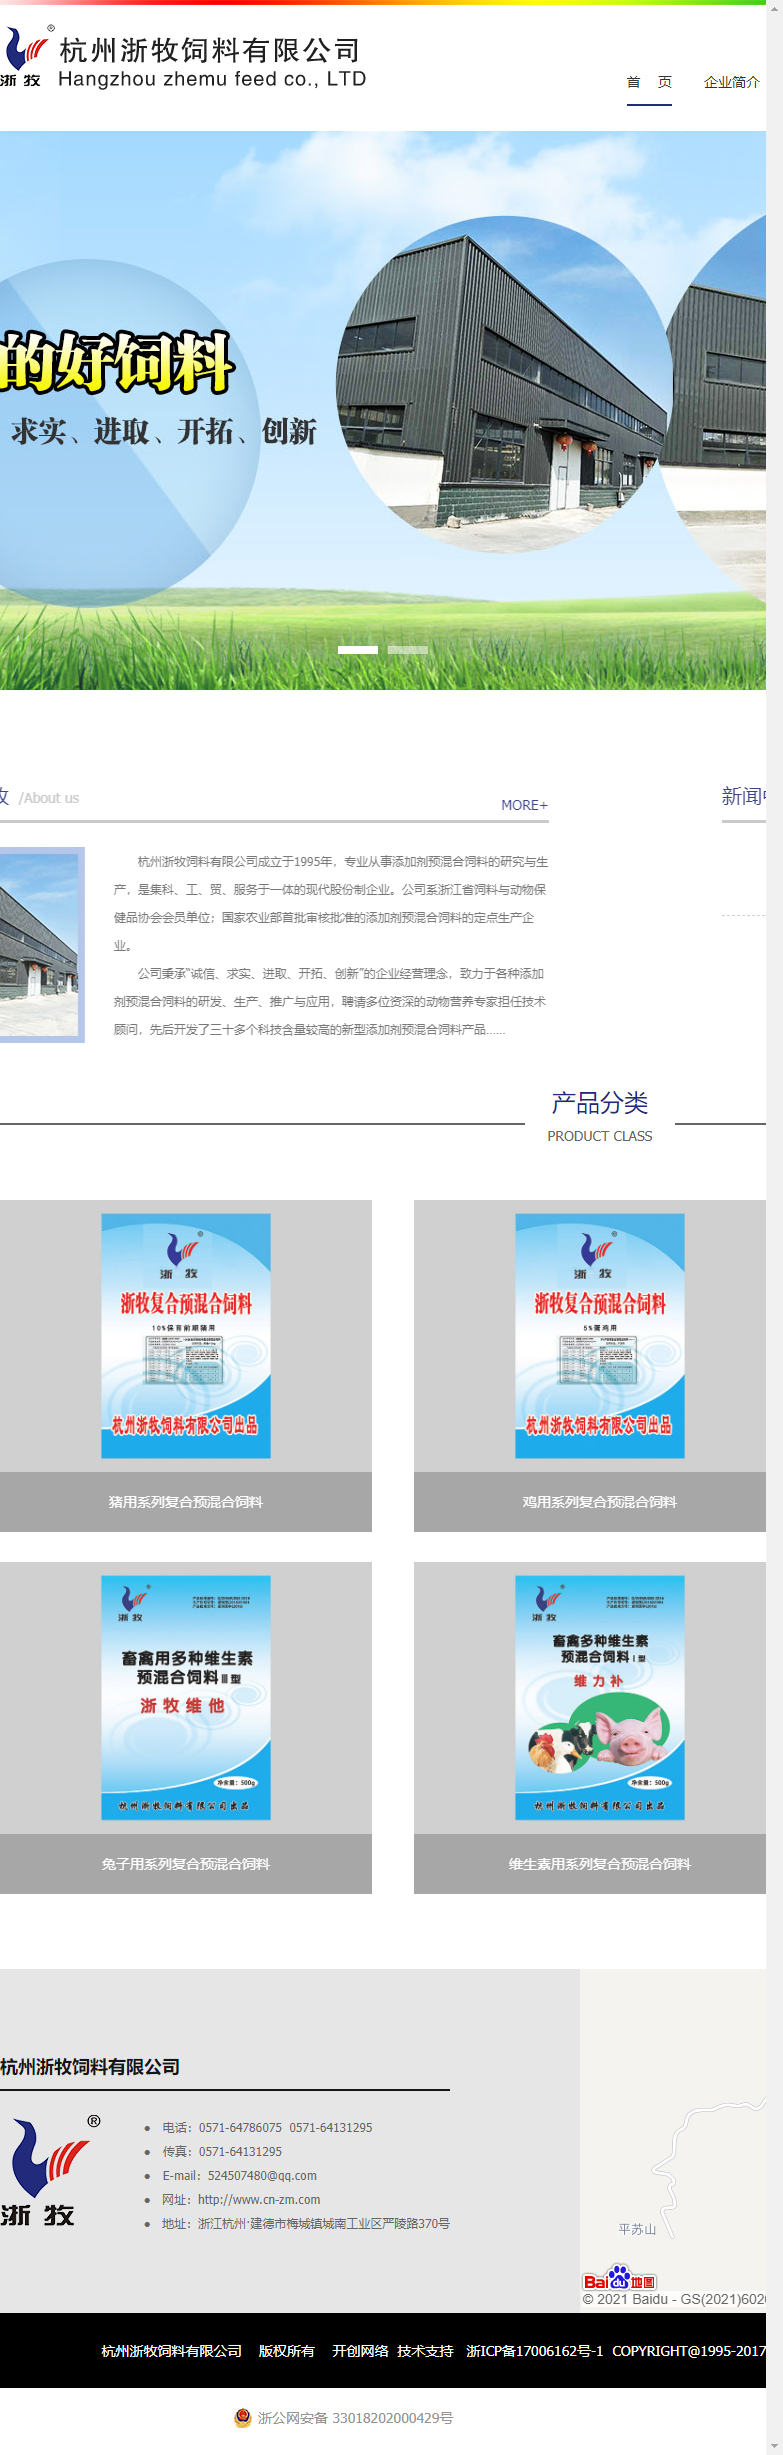 杭州浙牧饲料有限公司网站案例